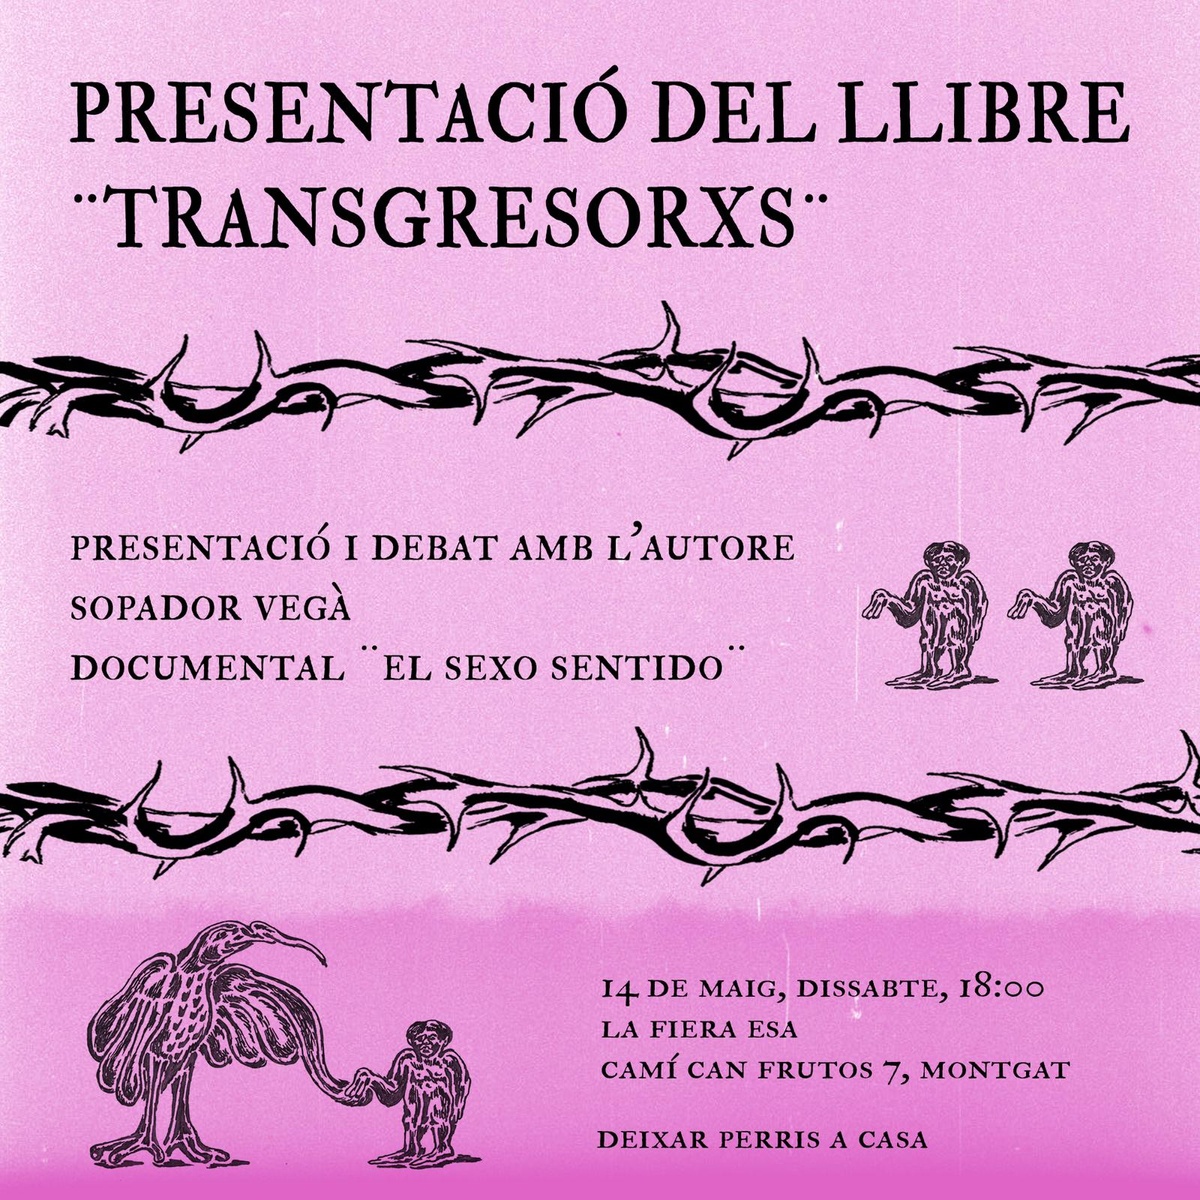 Presentació del llibre "Transgresorxs"